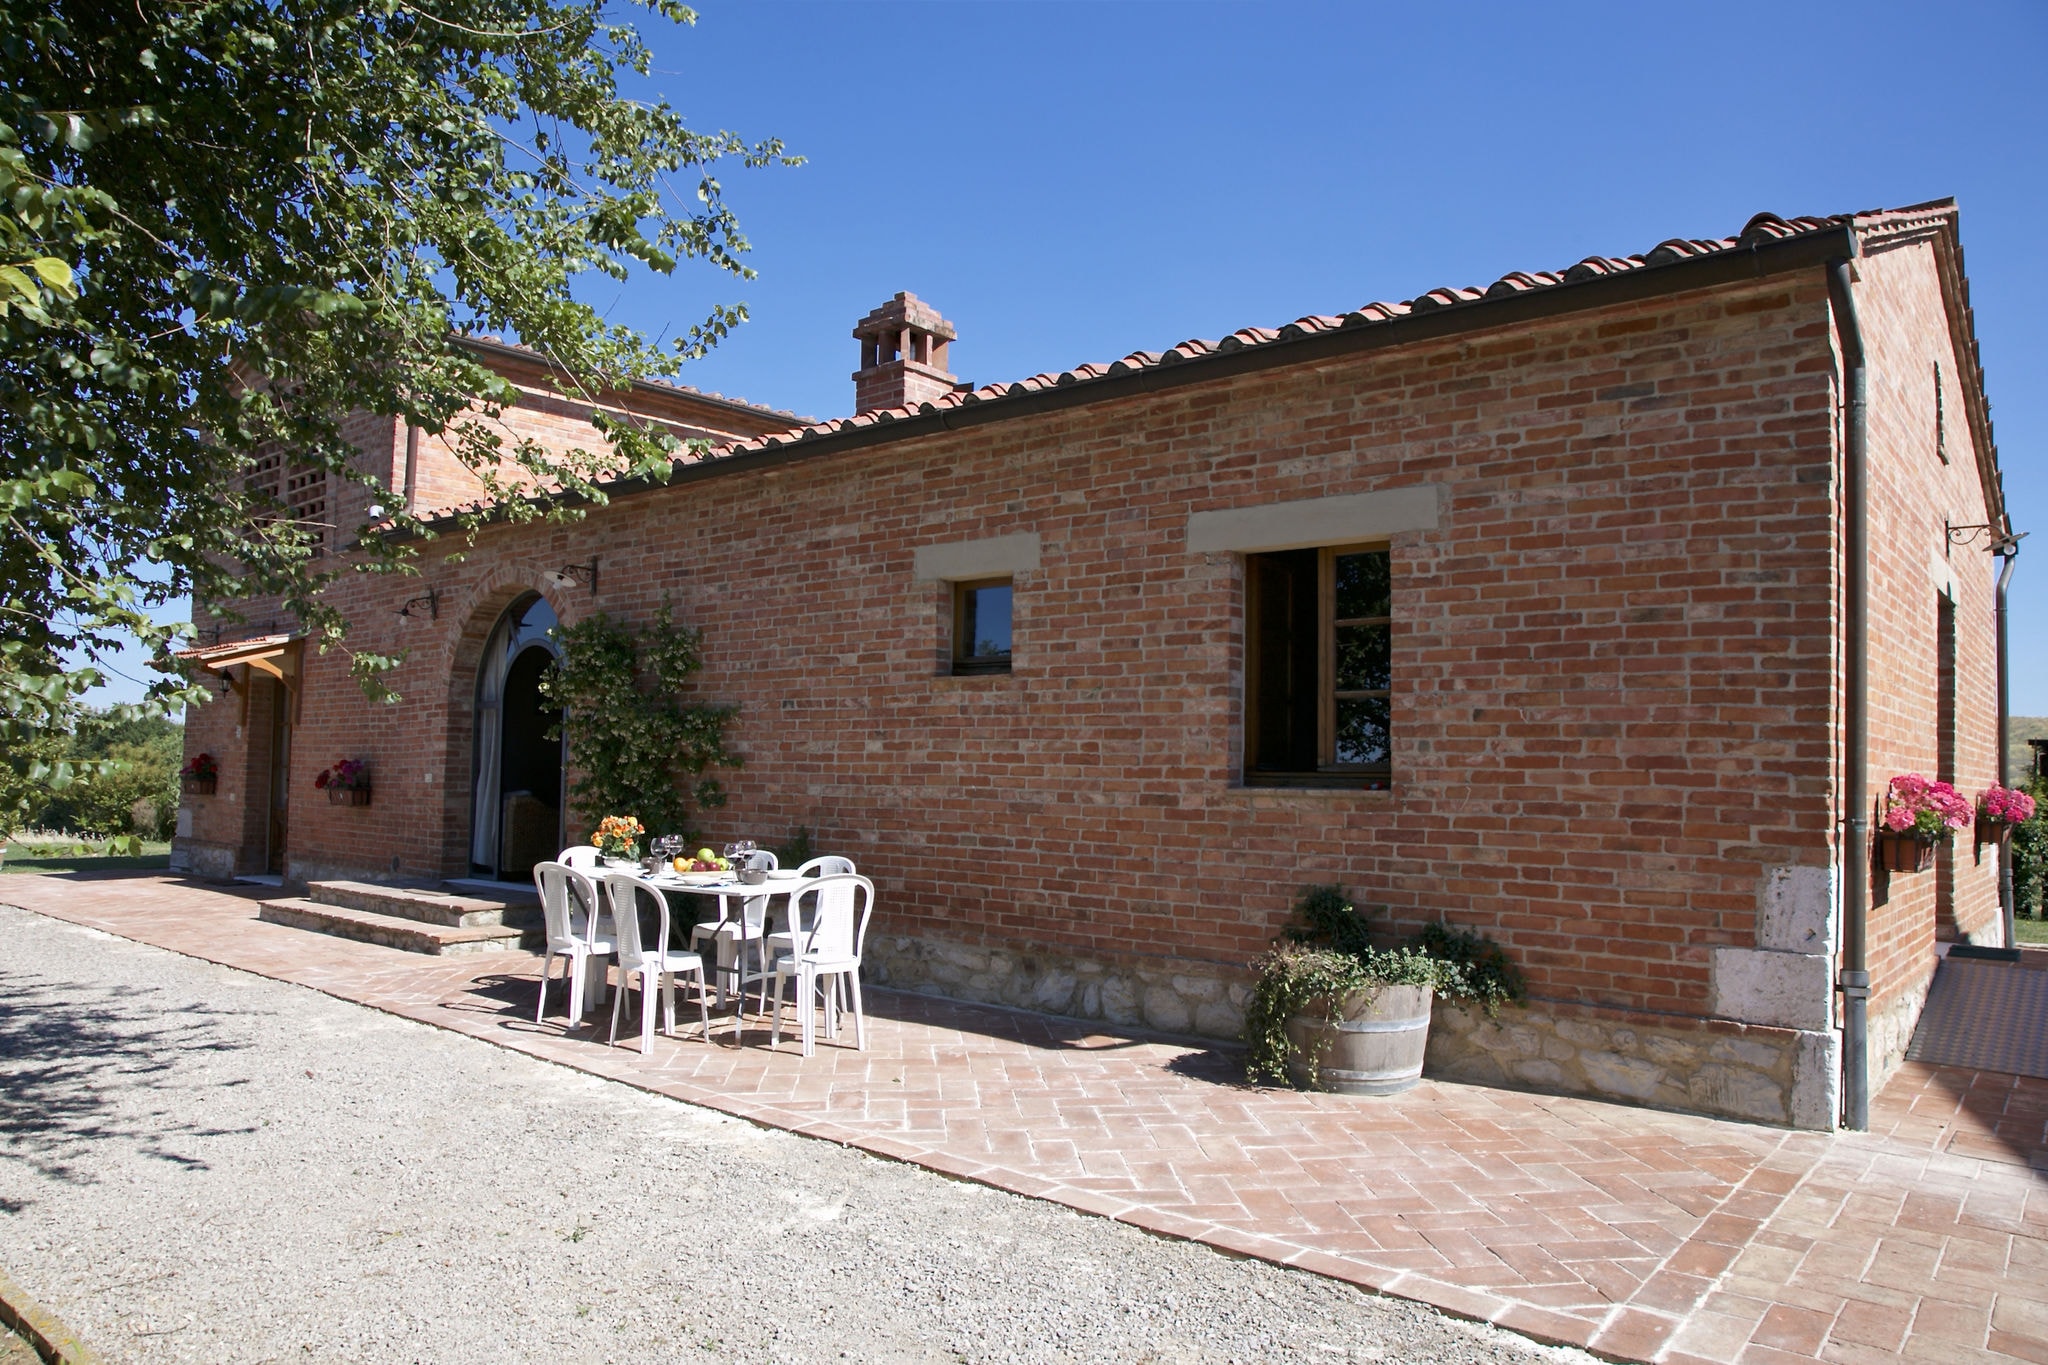 Bauernhaus auf einem Hügel in Castelnuovo Berardenga Toskana mit Grill